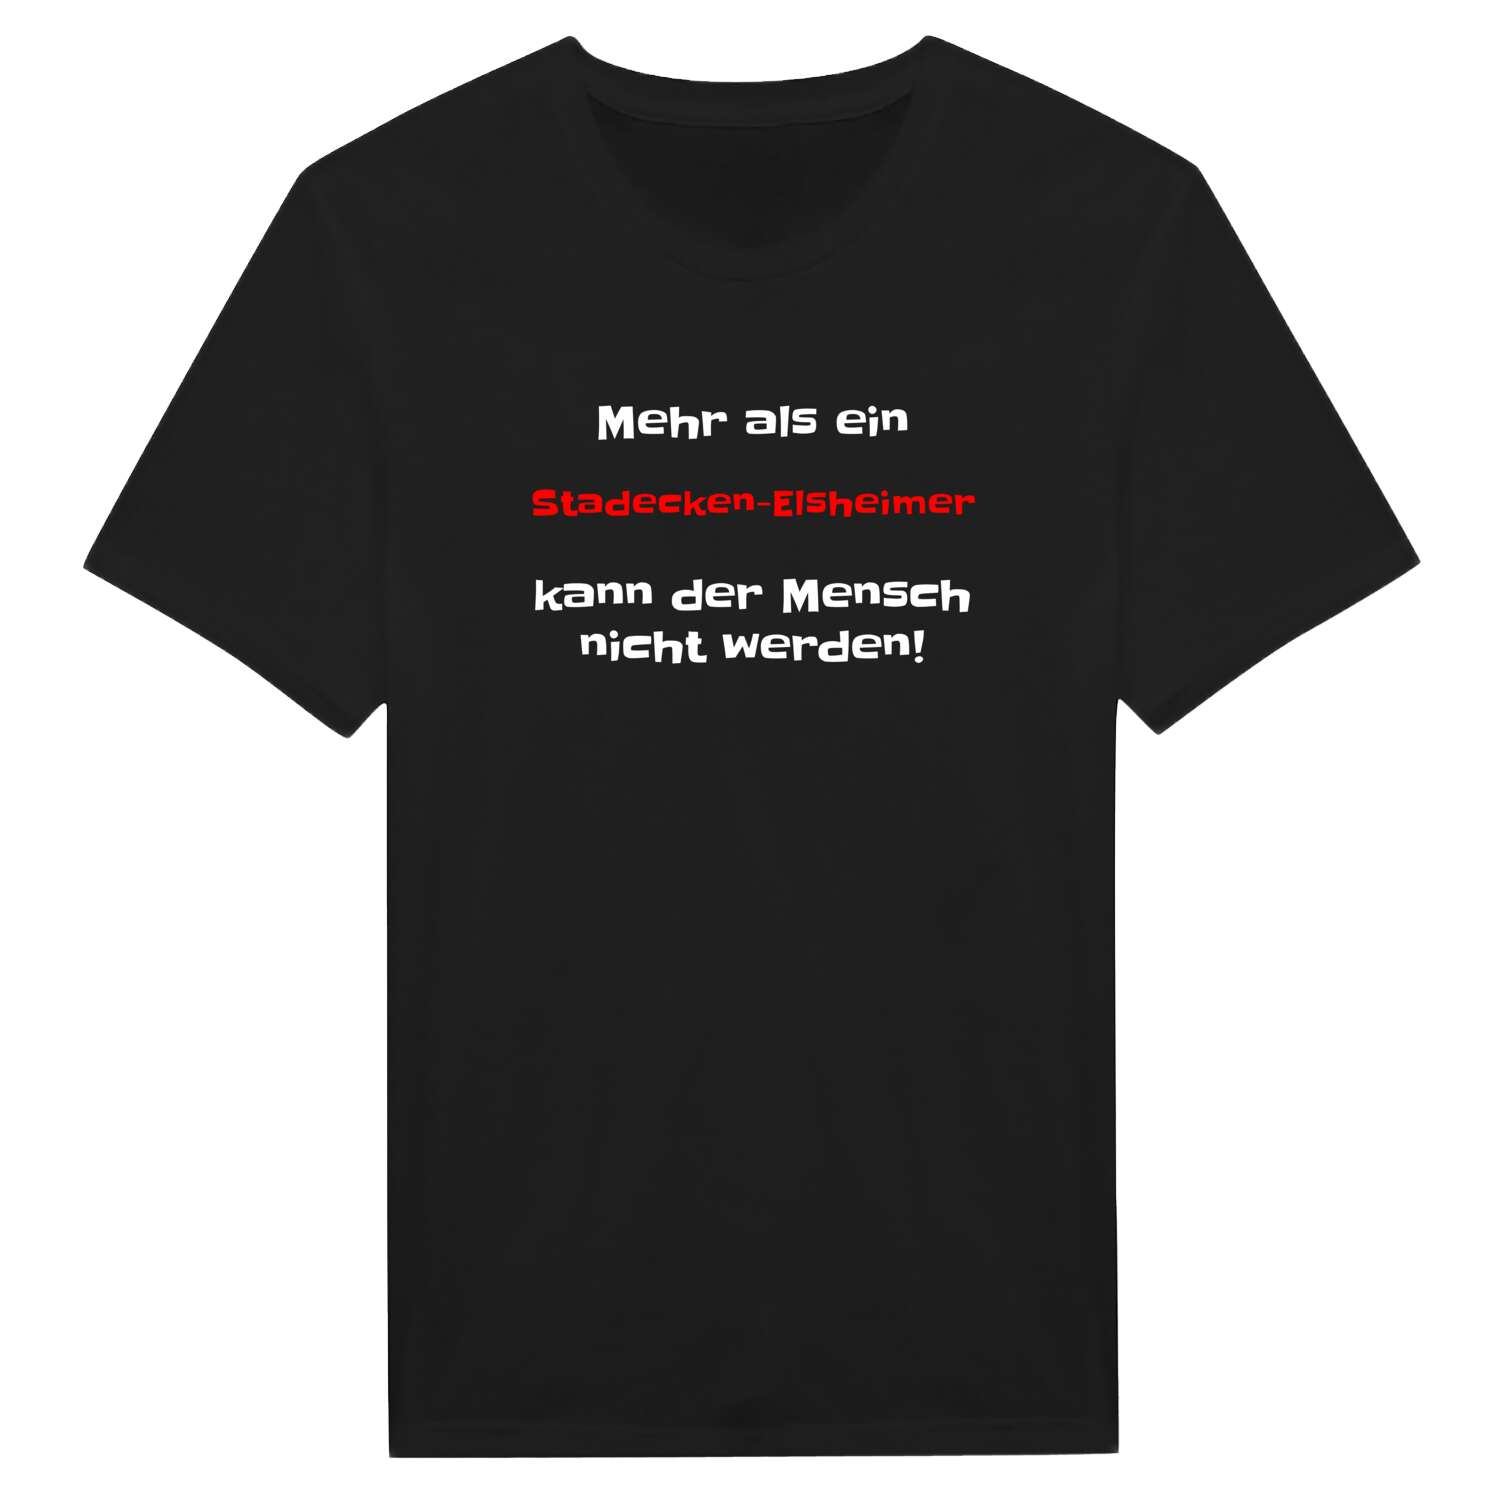 Stadecken-Elsheim T-Shirt »Mehr als ein«